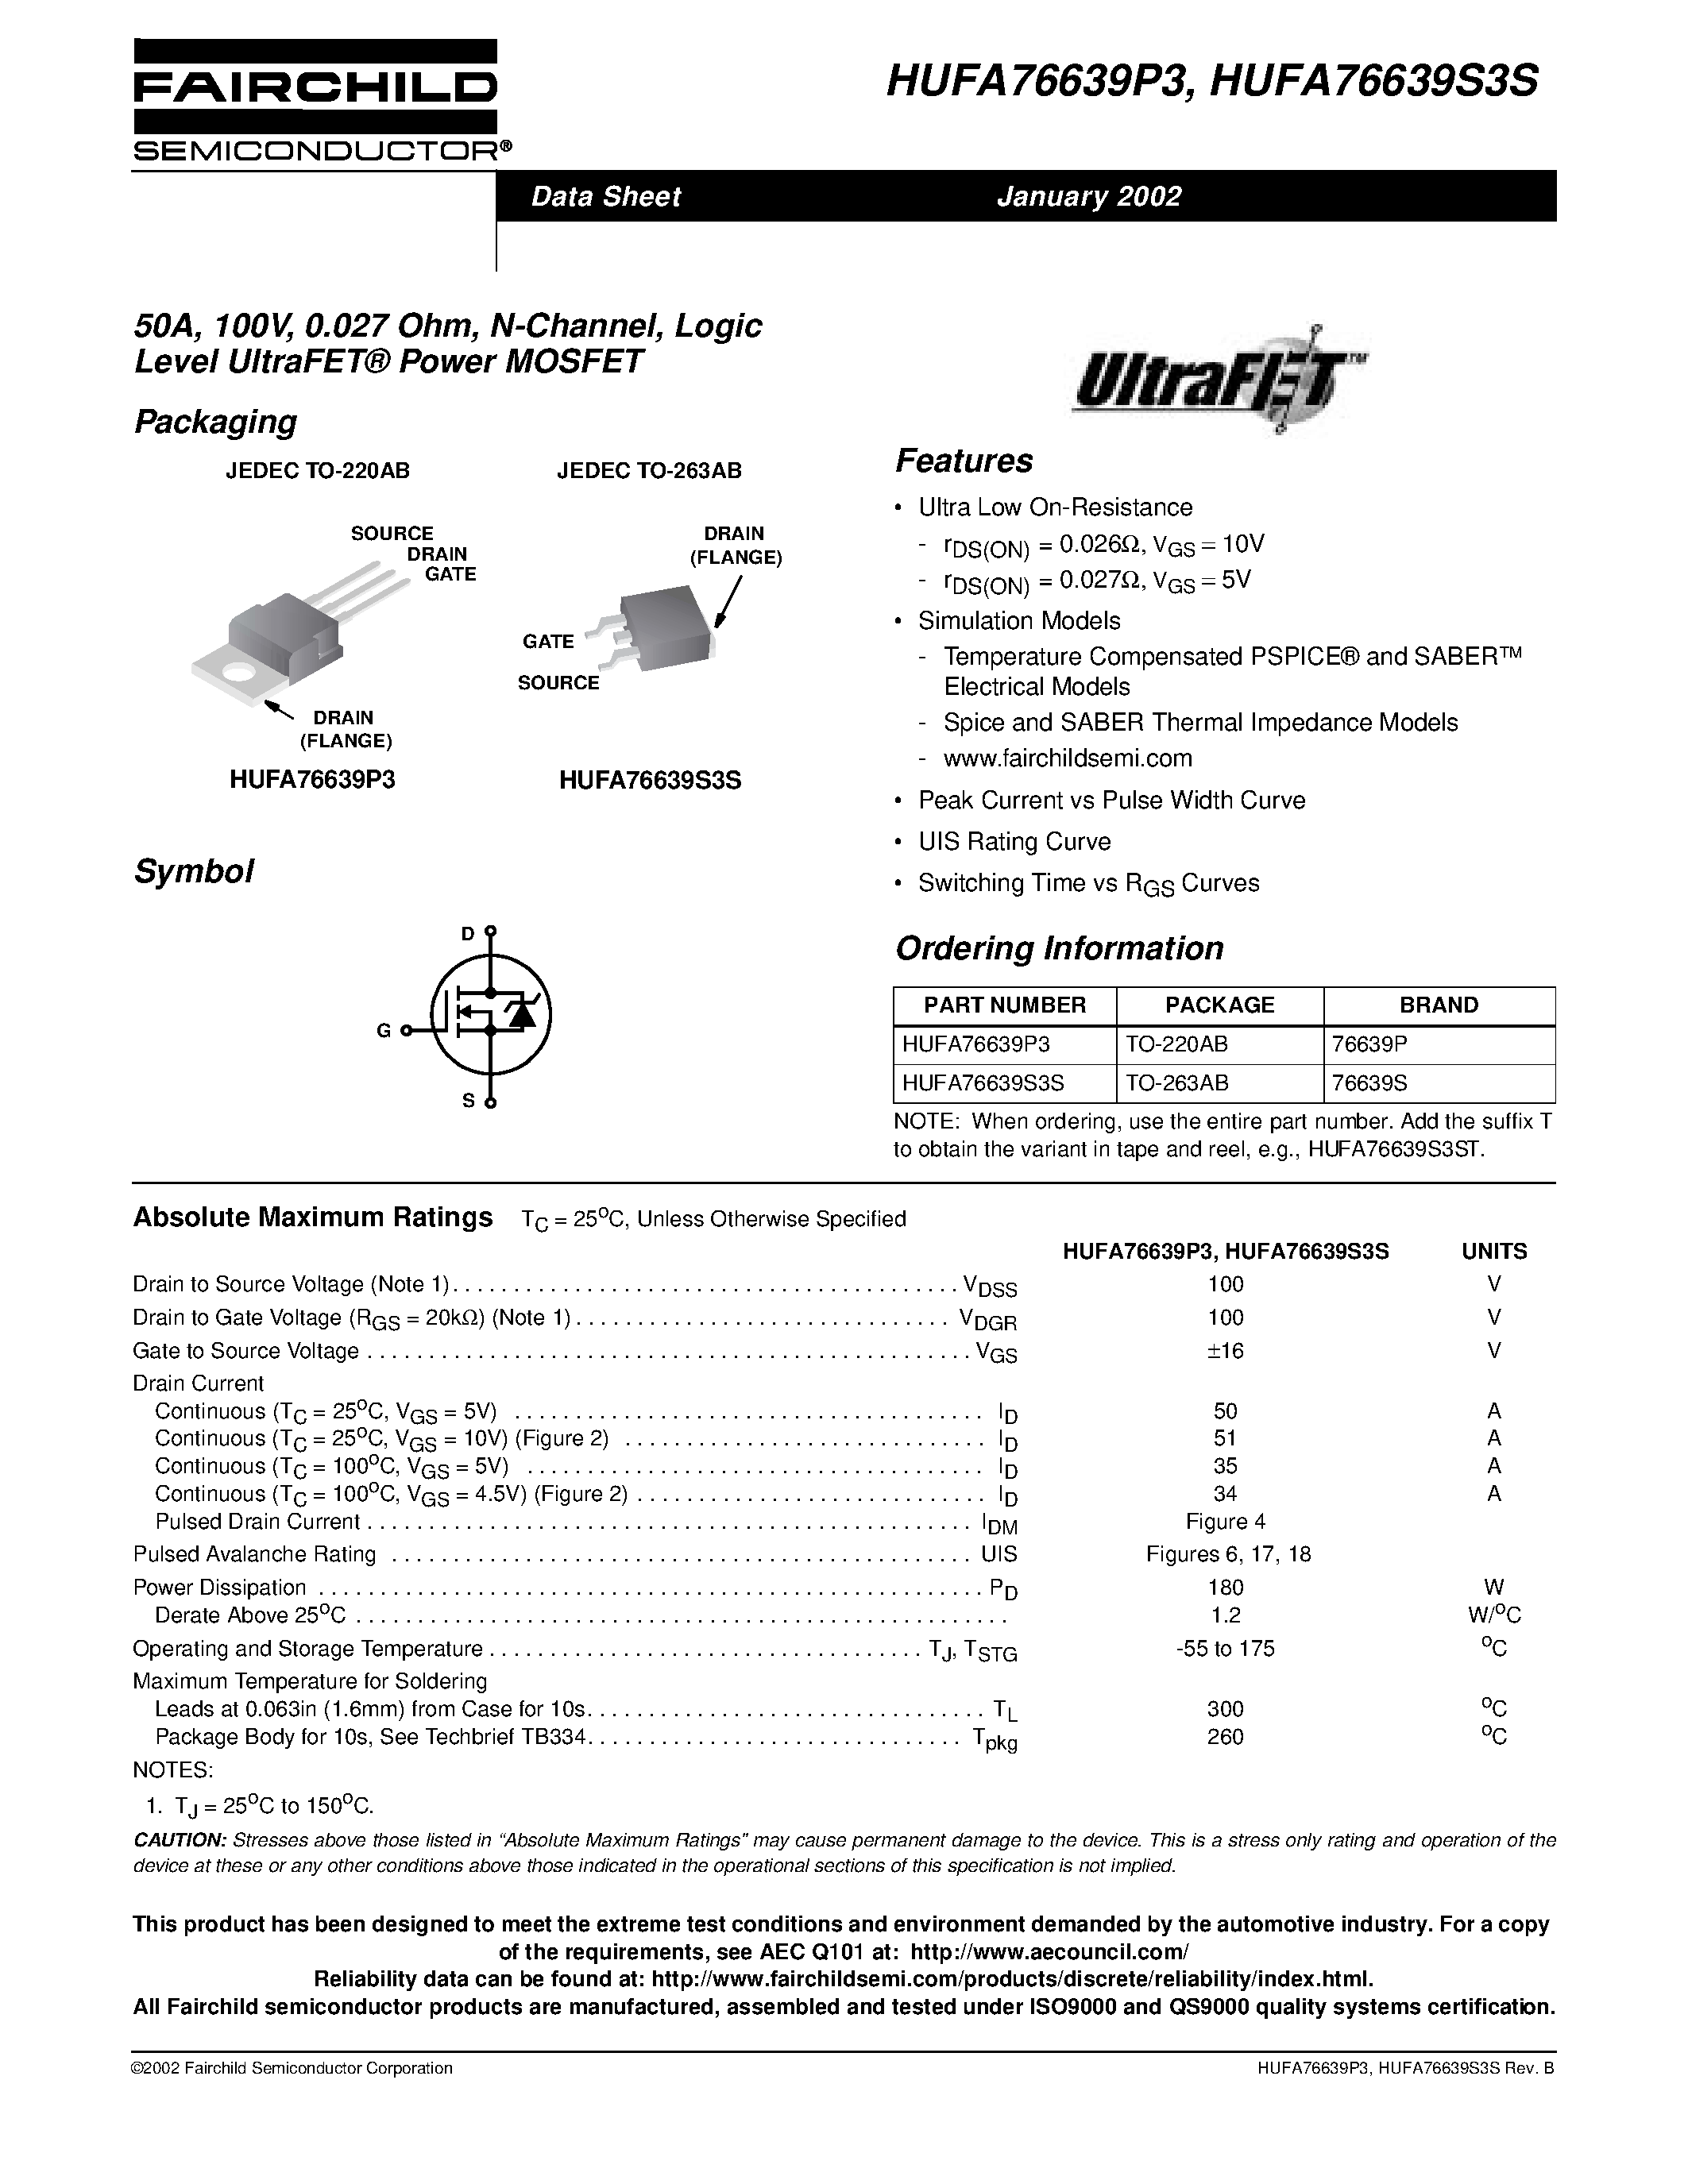 Даташит HUFA76639P3 - 50A/ 100V/ 0.027 Ohm/ N-Channel/ Logic Level UltraFET Power MOSFET страница 1